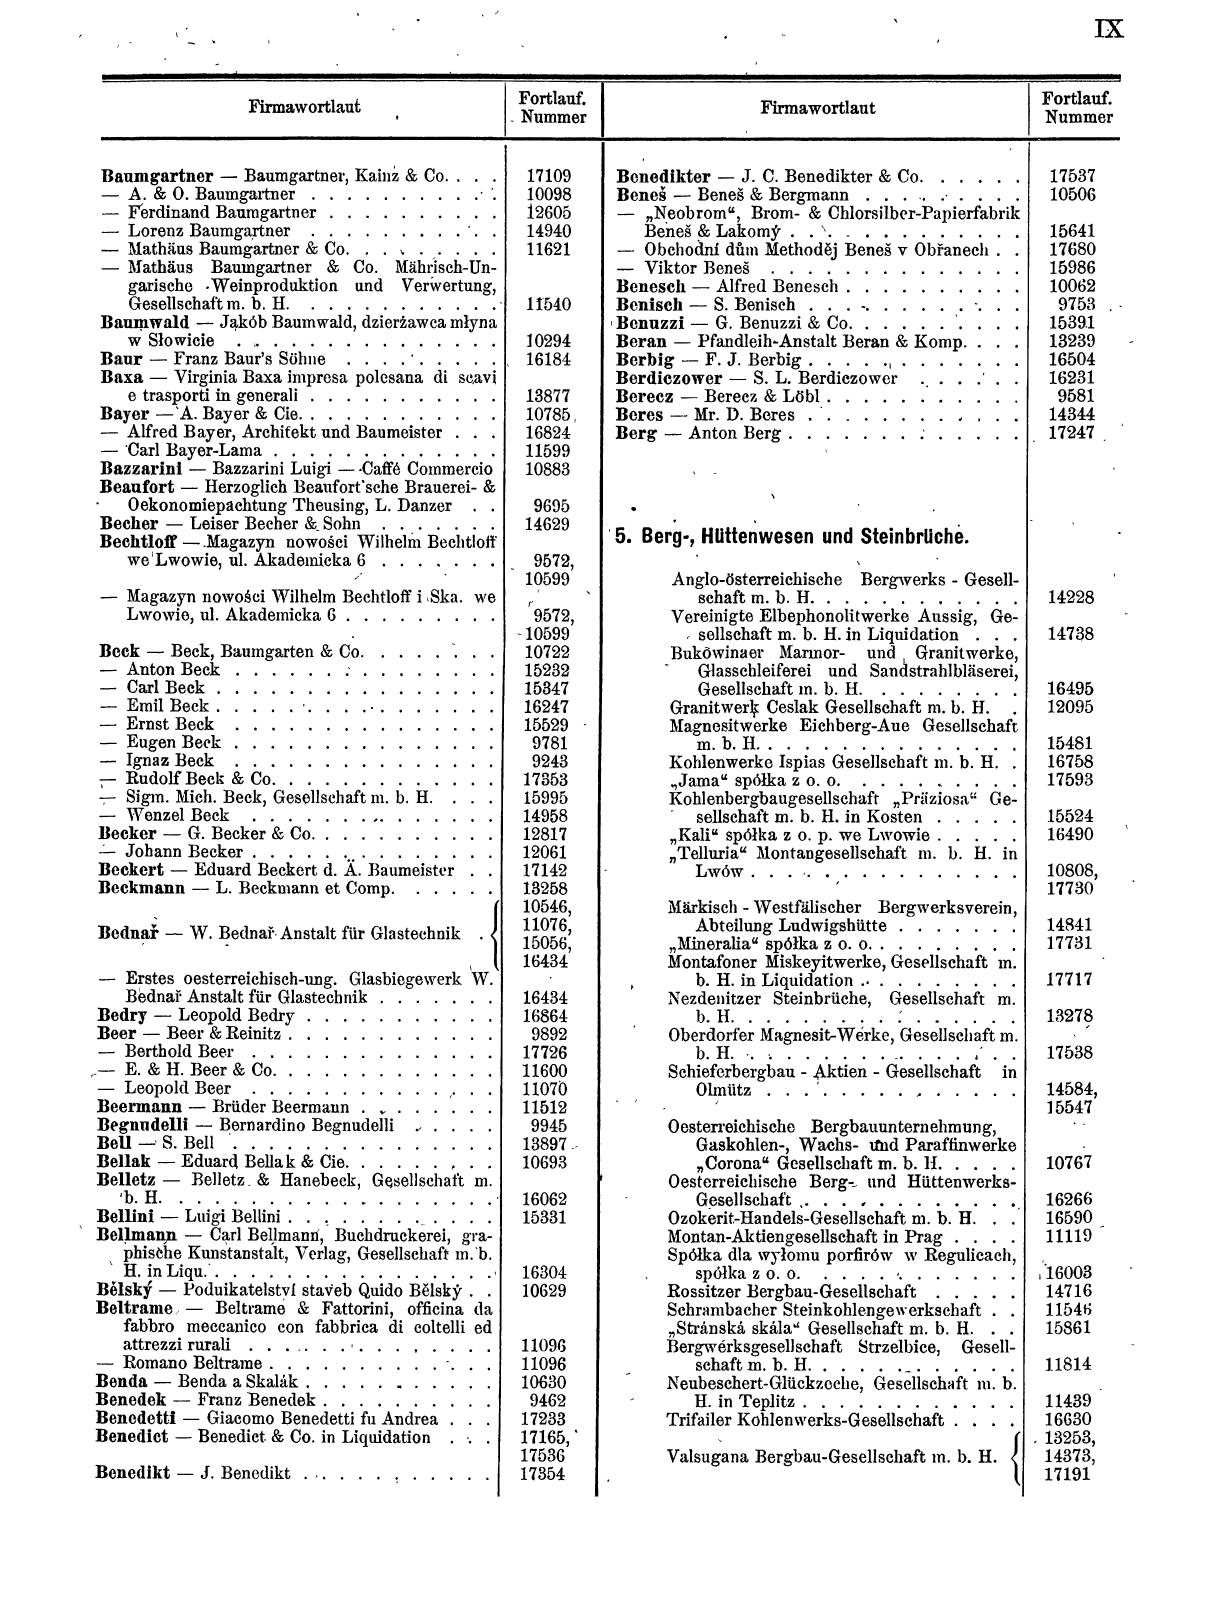 Zentralblatt für die Eintragungen in das Handelsregister 1913, Teil 2 - Seite 13